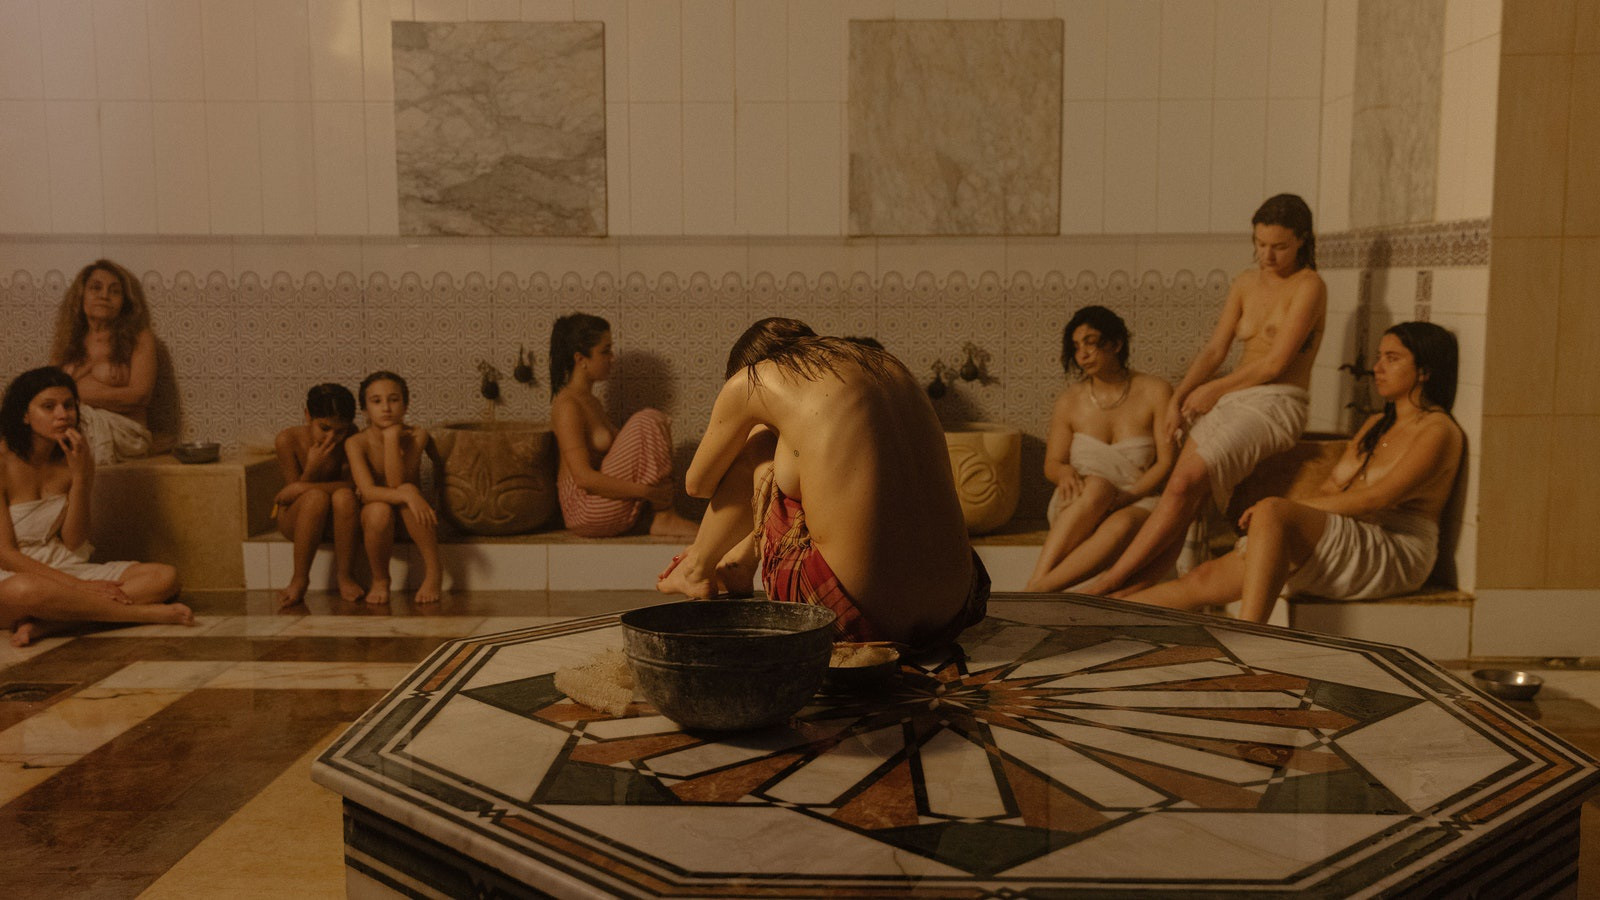 Bộ ảnh trong nhà tắm làm thay đổi cách nhìn về phụ nữ Ả Rập - 2